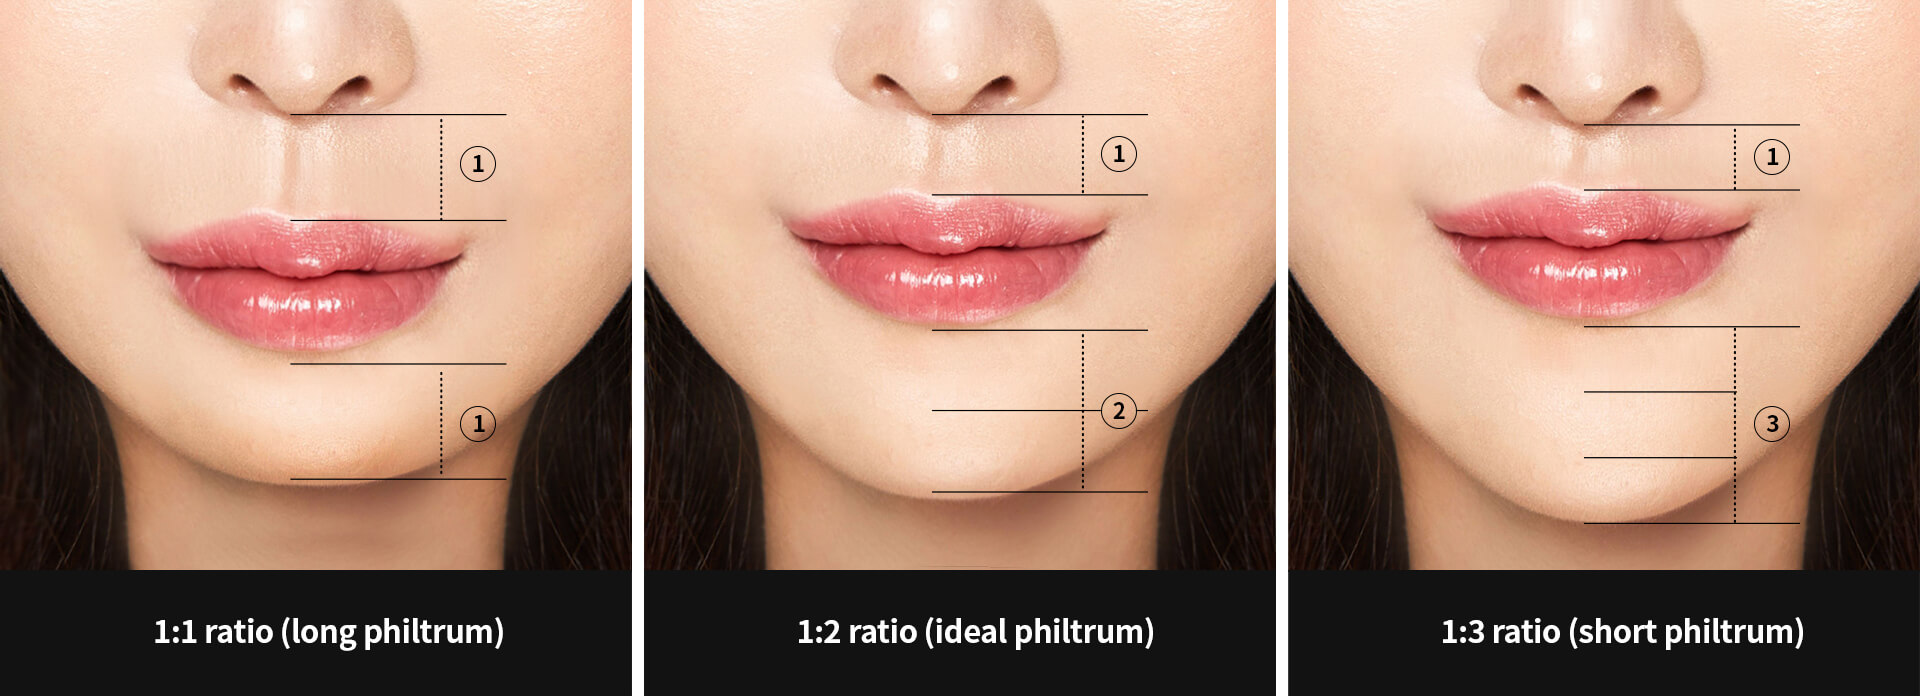 Golden ratio for ideal philtrum | Hyundai Aesthetics Plastic Surgery